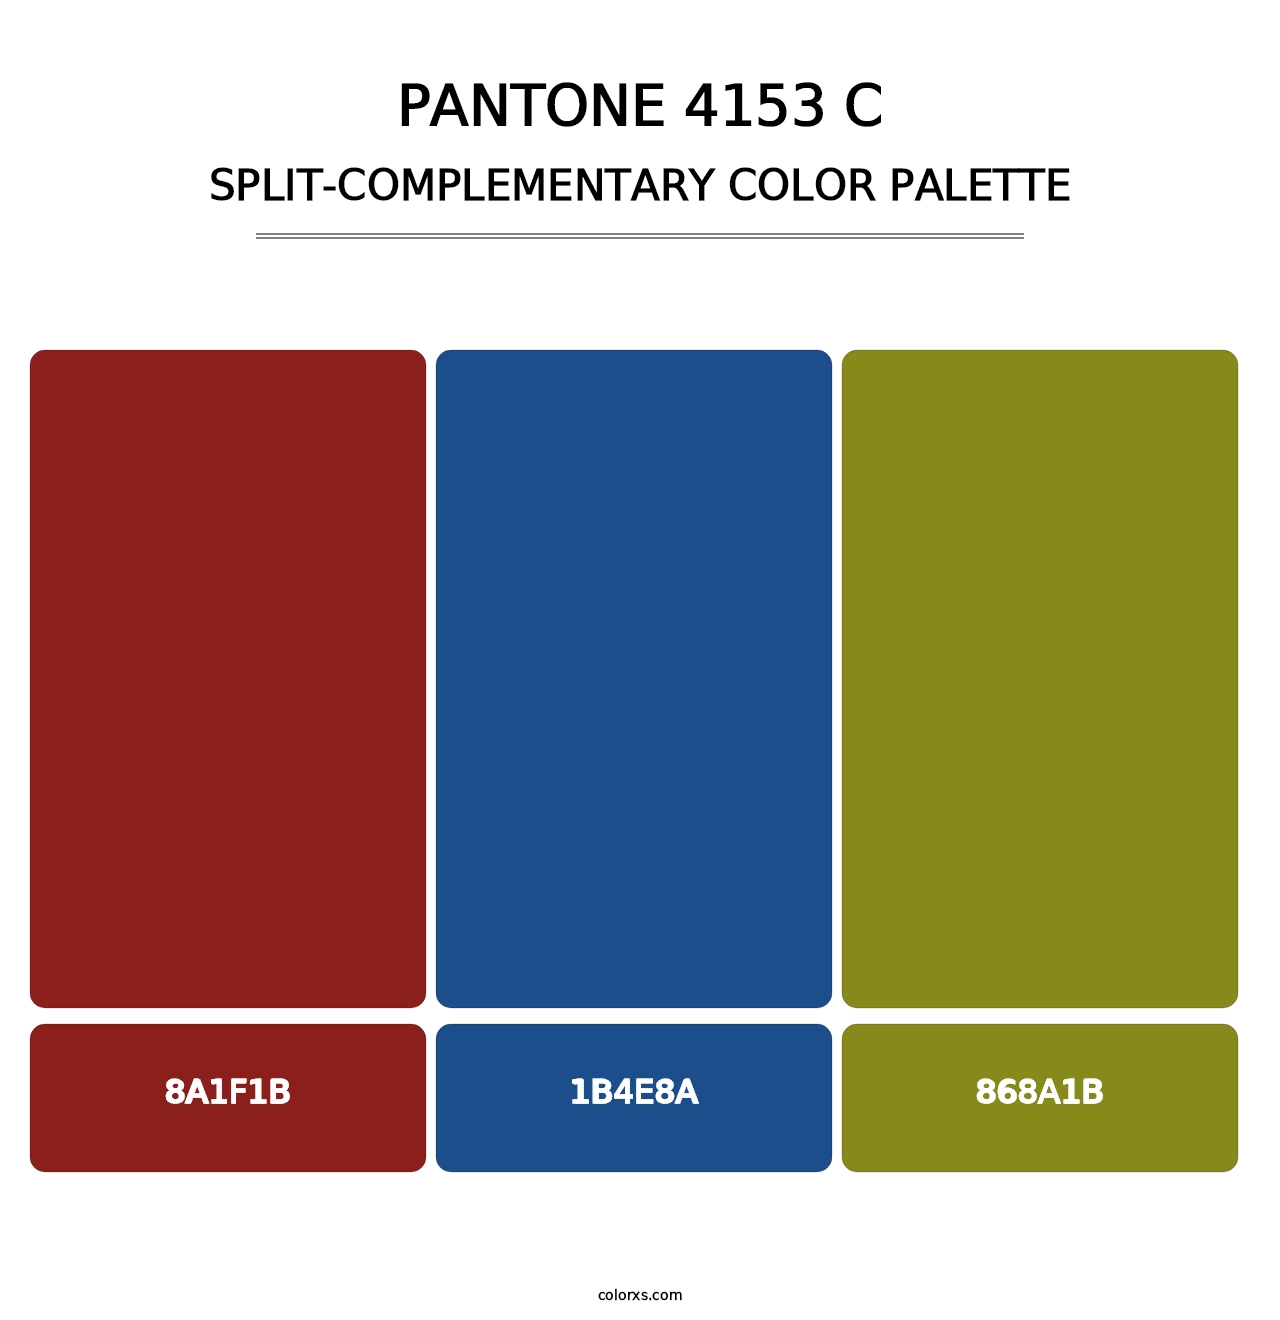 PANTONE 4153 C - Split-Complementary Color Palette